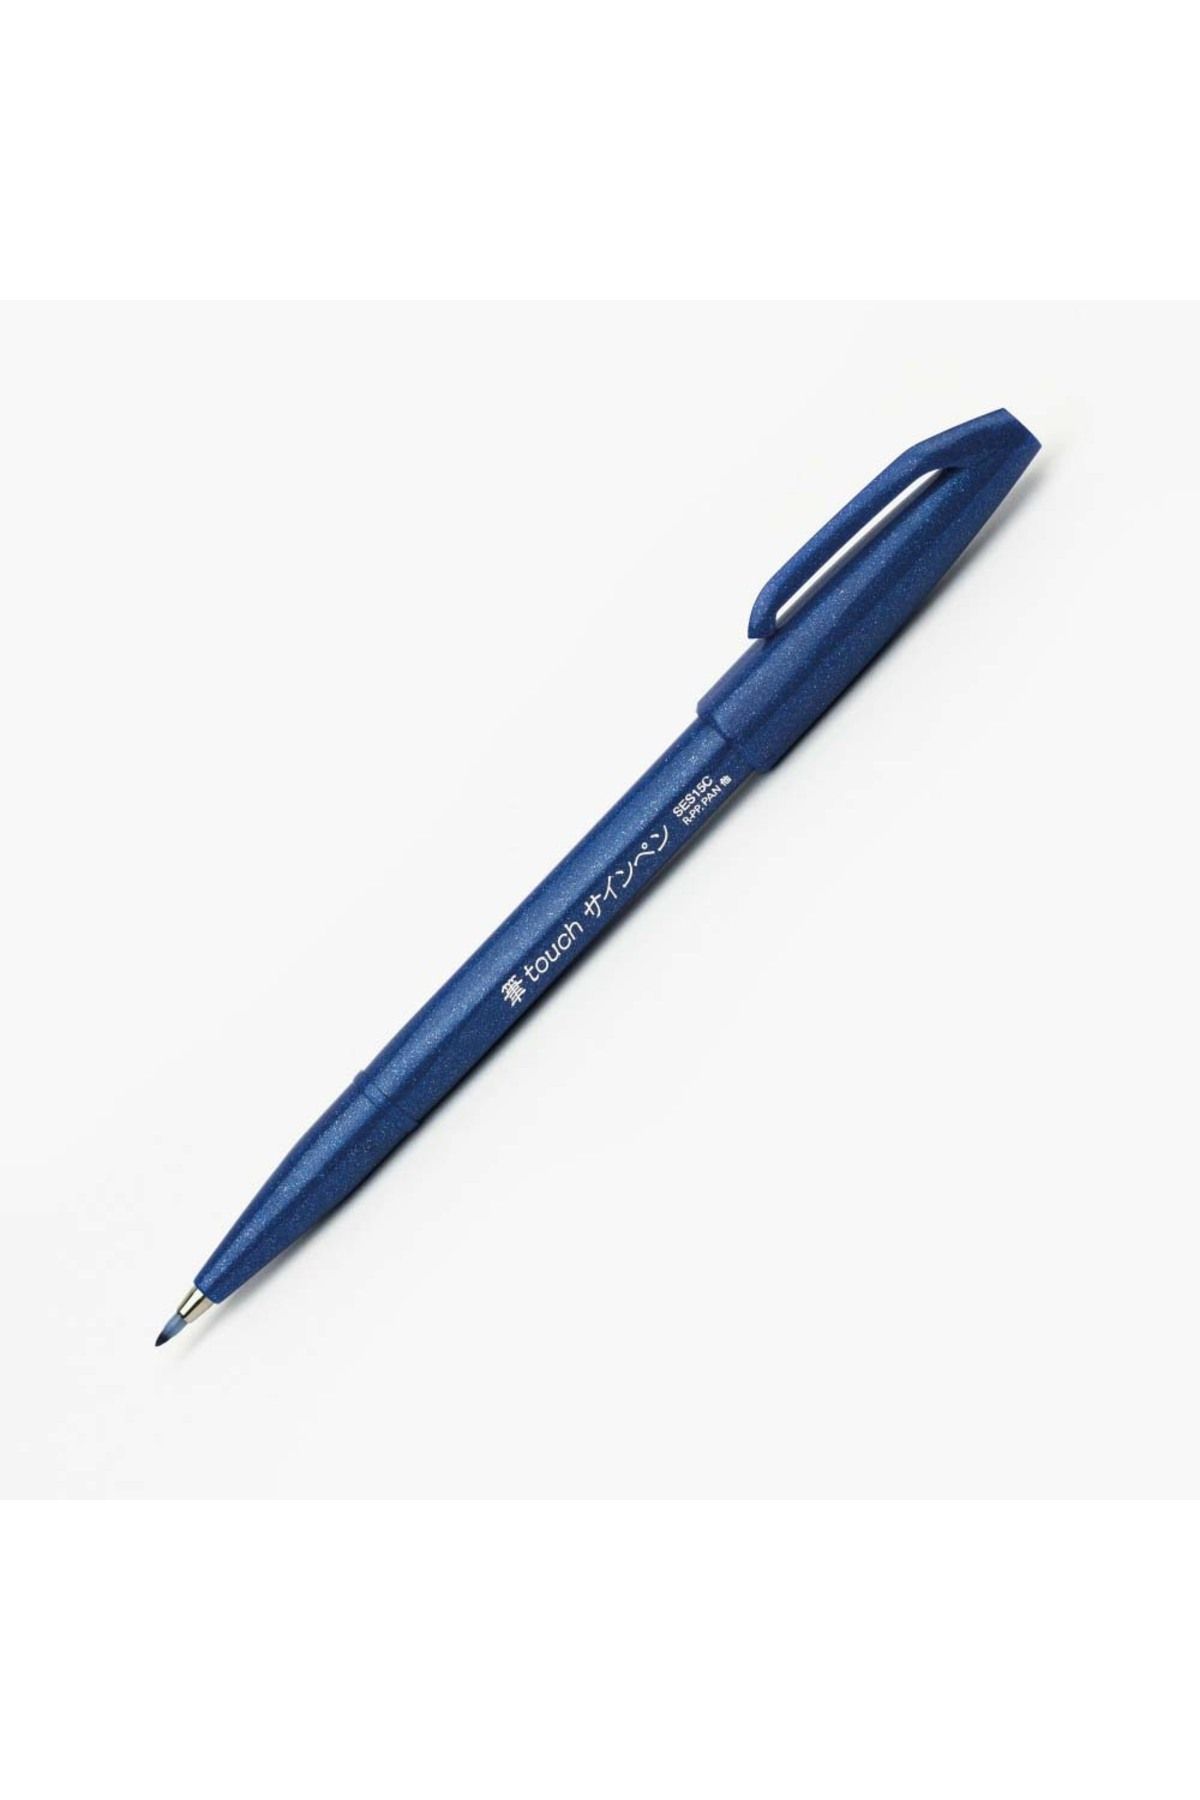 Pentel Brush Sign Pen Imza Kalemi Blue